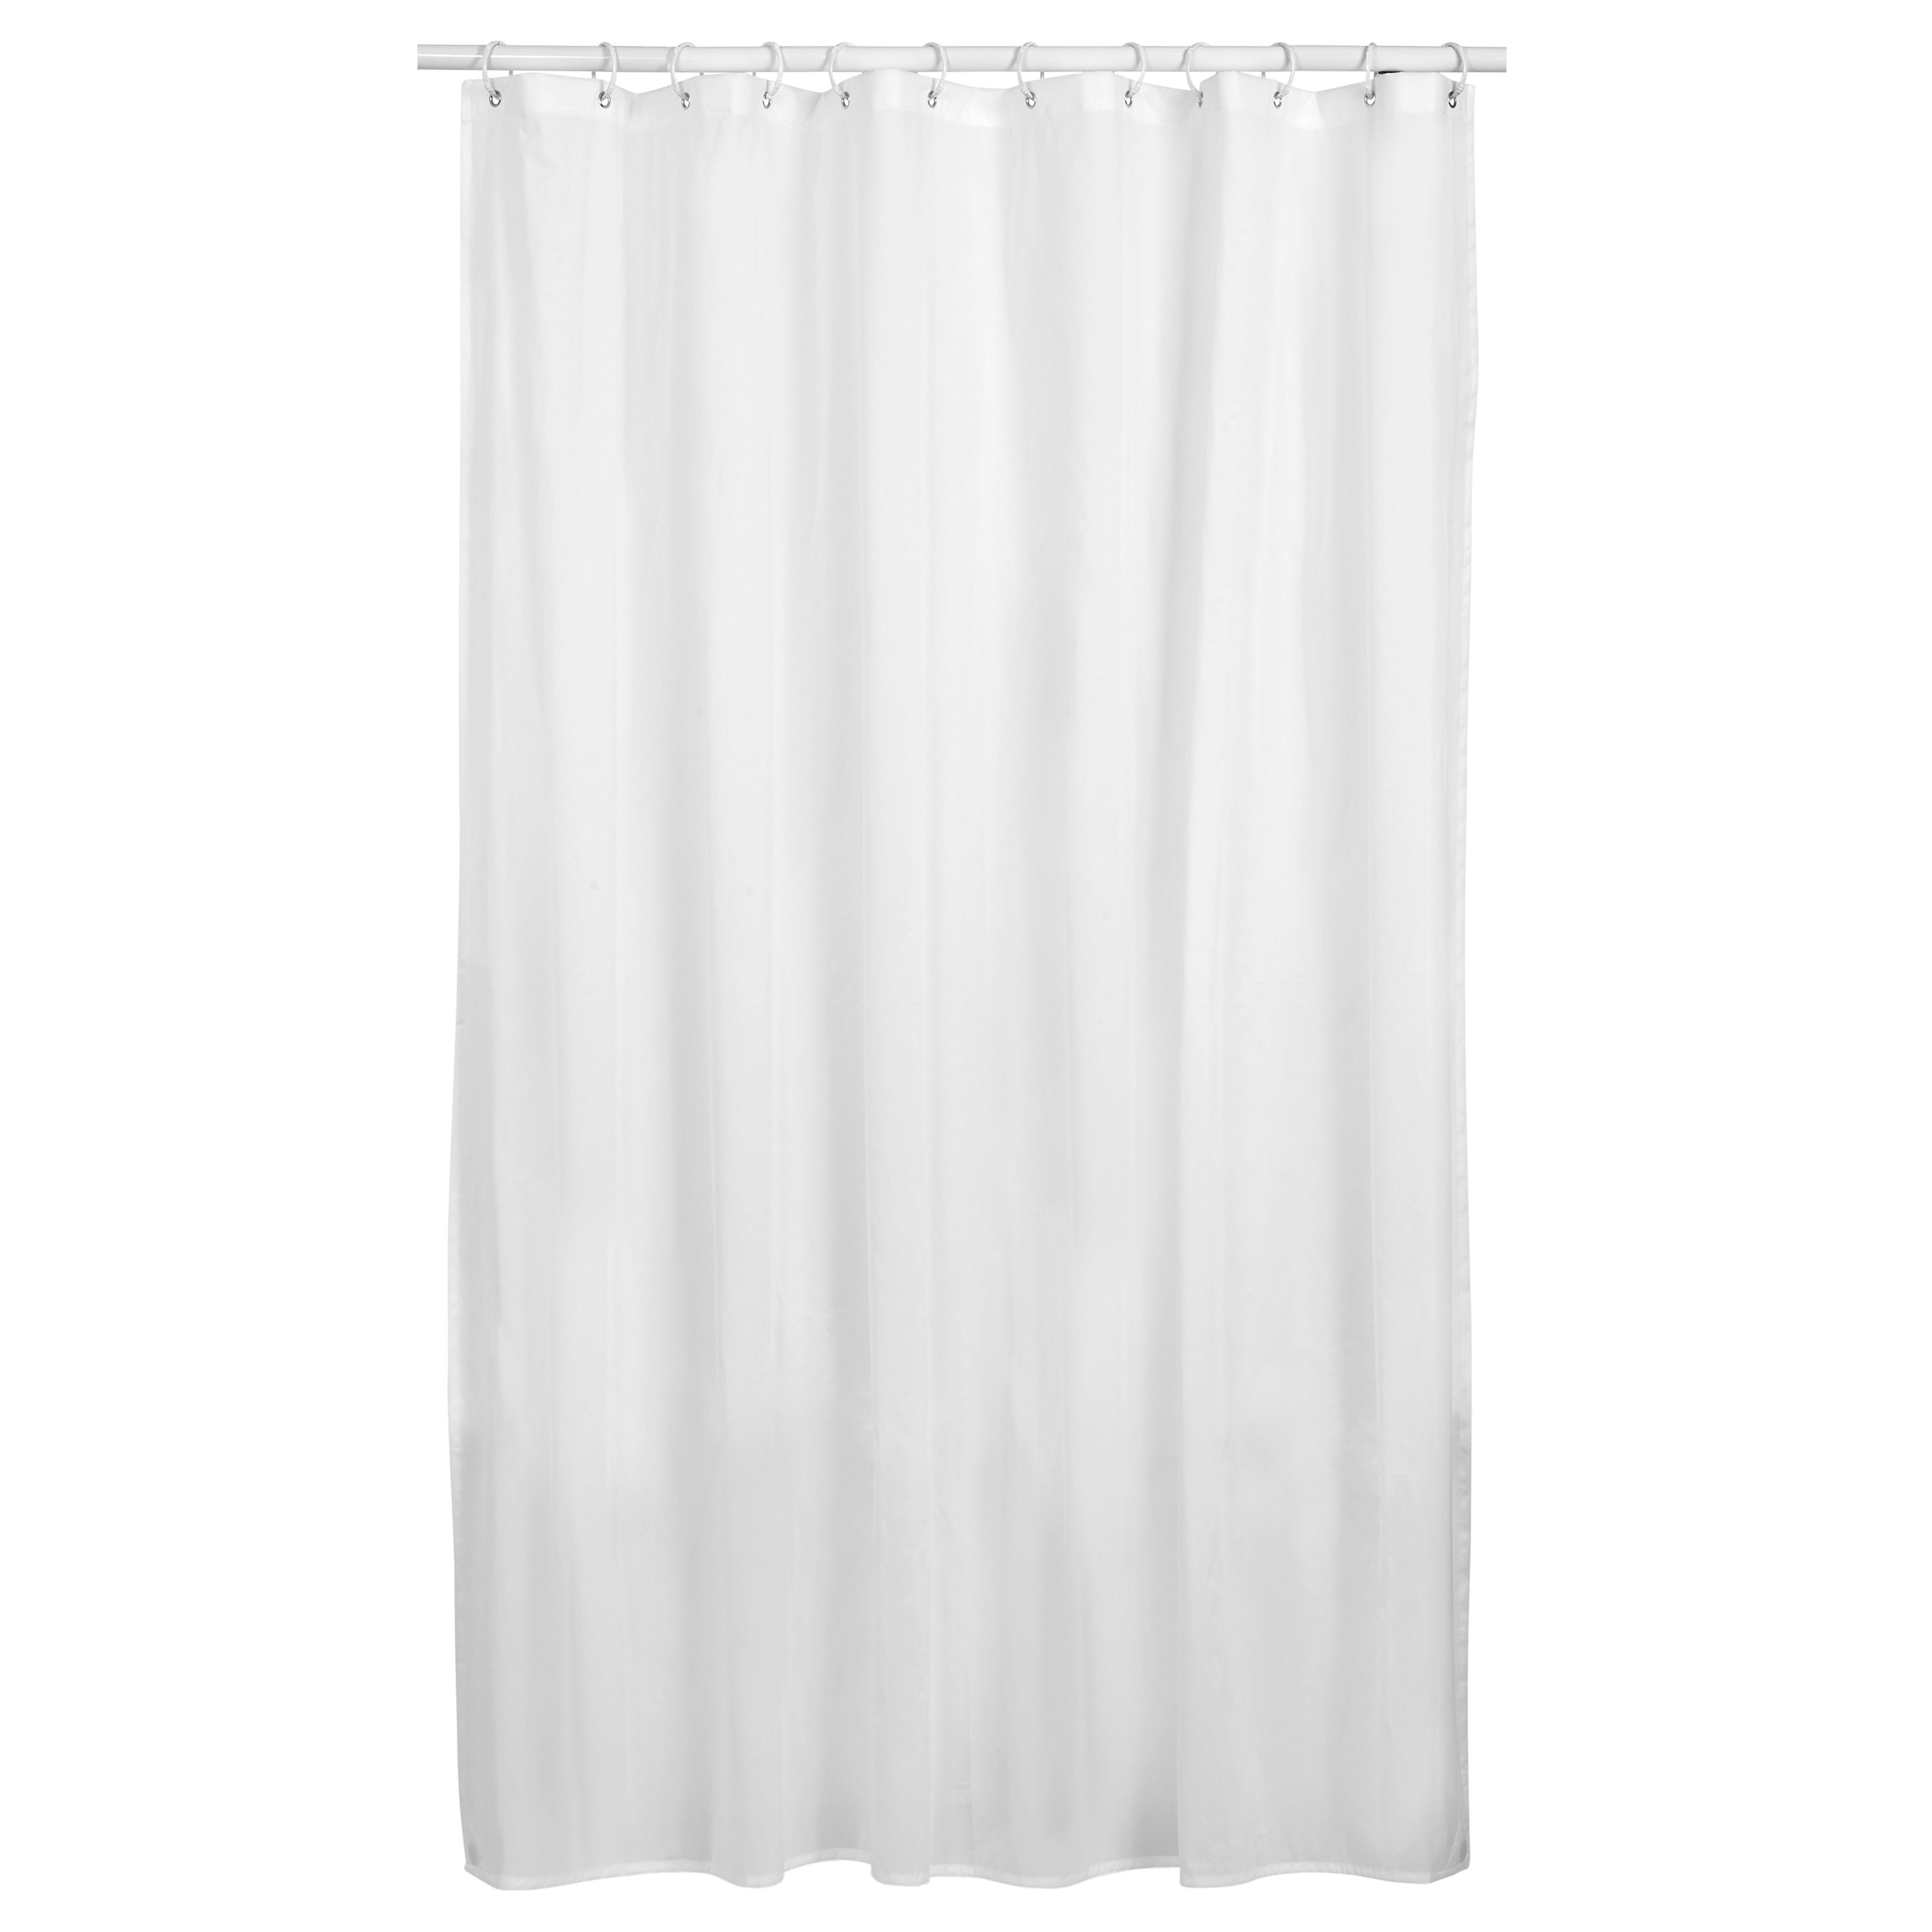 Great Flower Waterproof Bathroom Polyester Shower Curtain Liner Water Resistant 